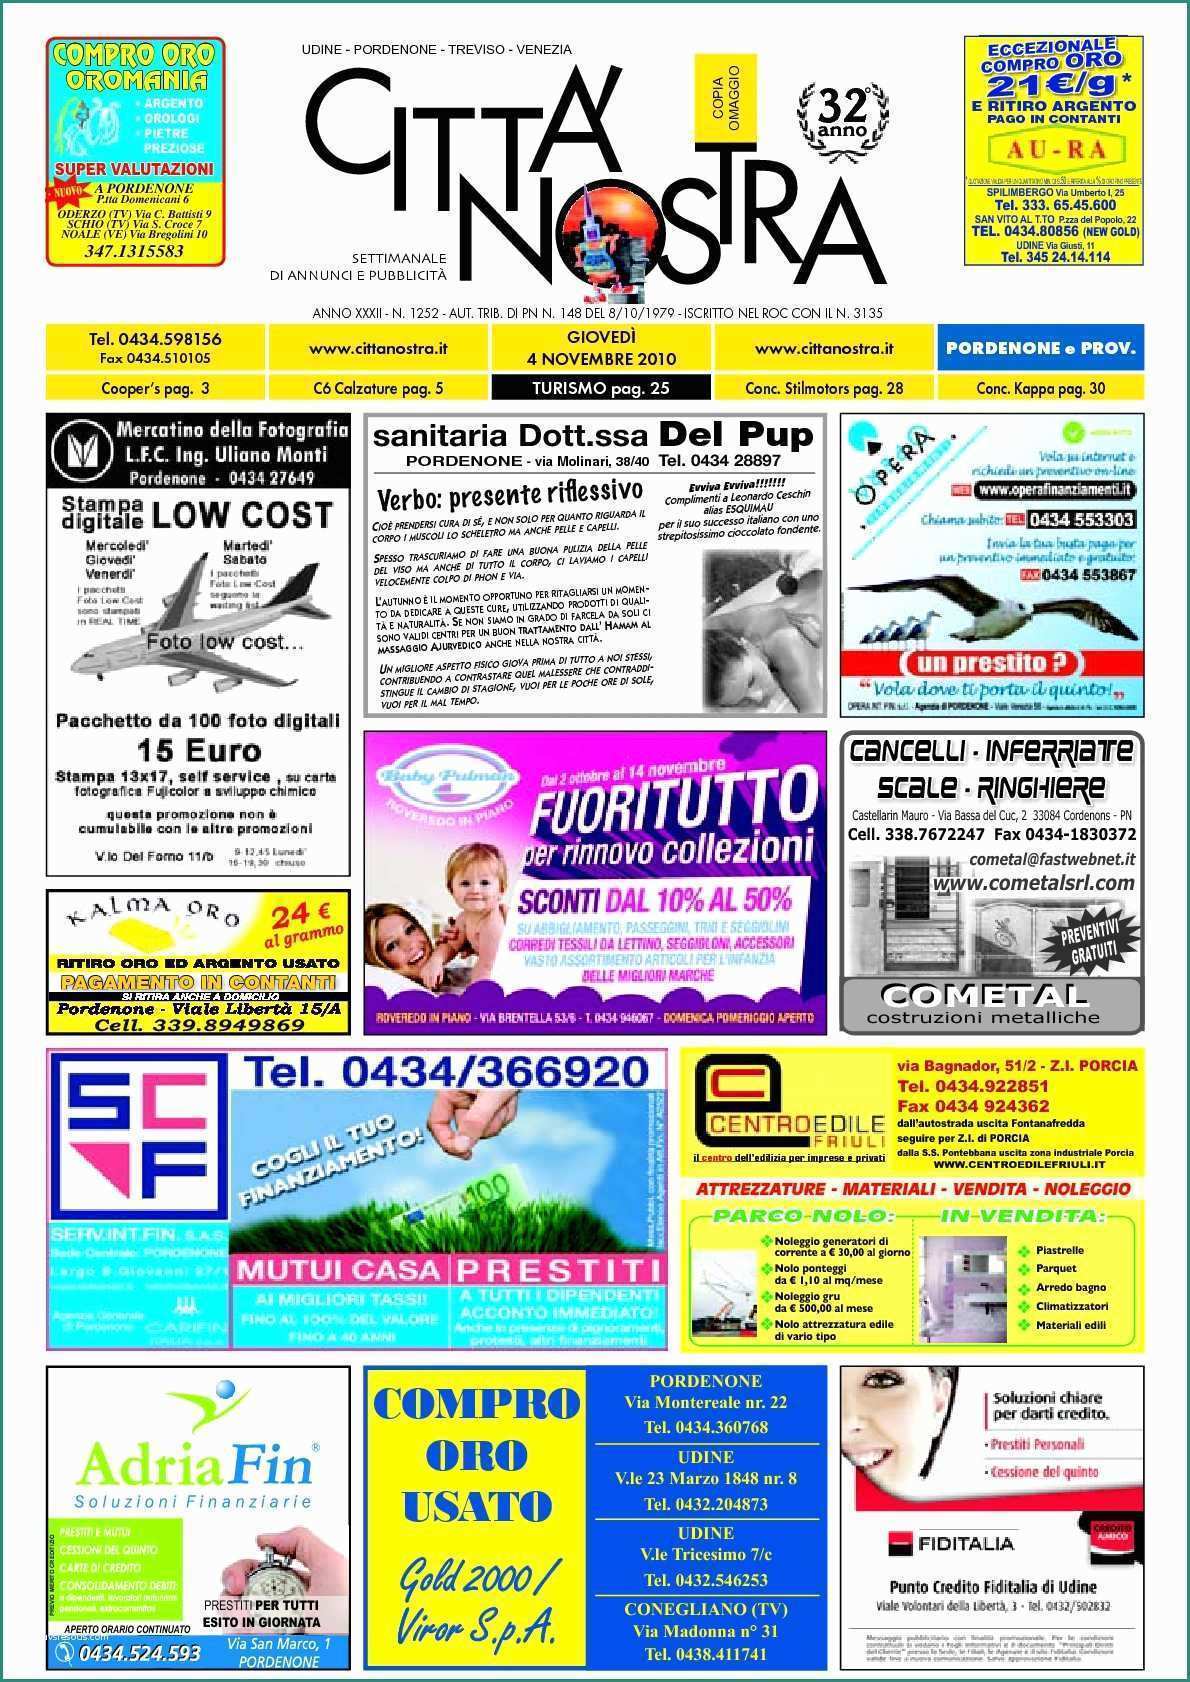 Lavatrice Industriale Usata E Calaméo Citt  Nostra Pordenone Del 04 11 2010 N 1252